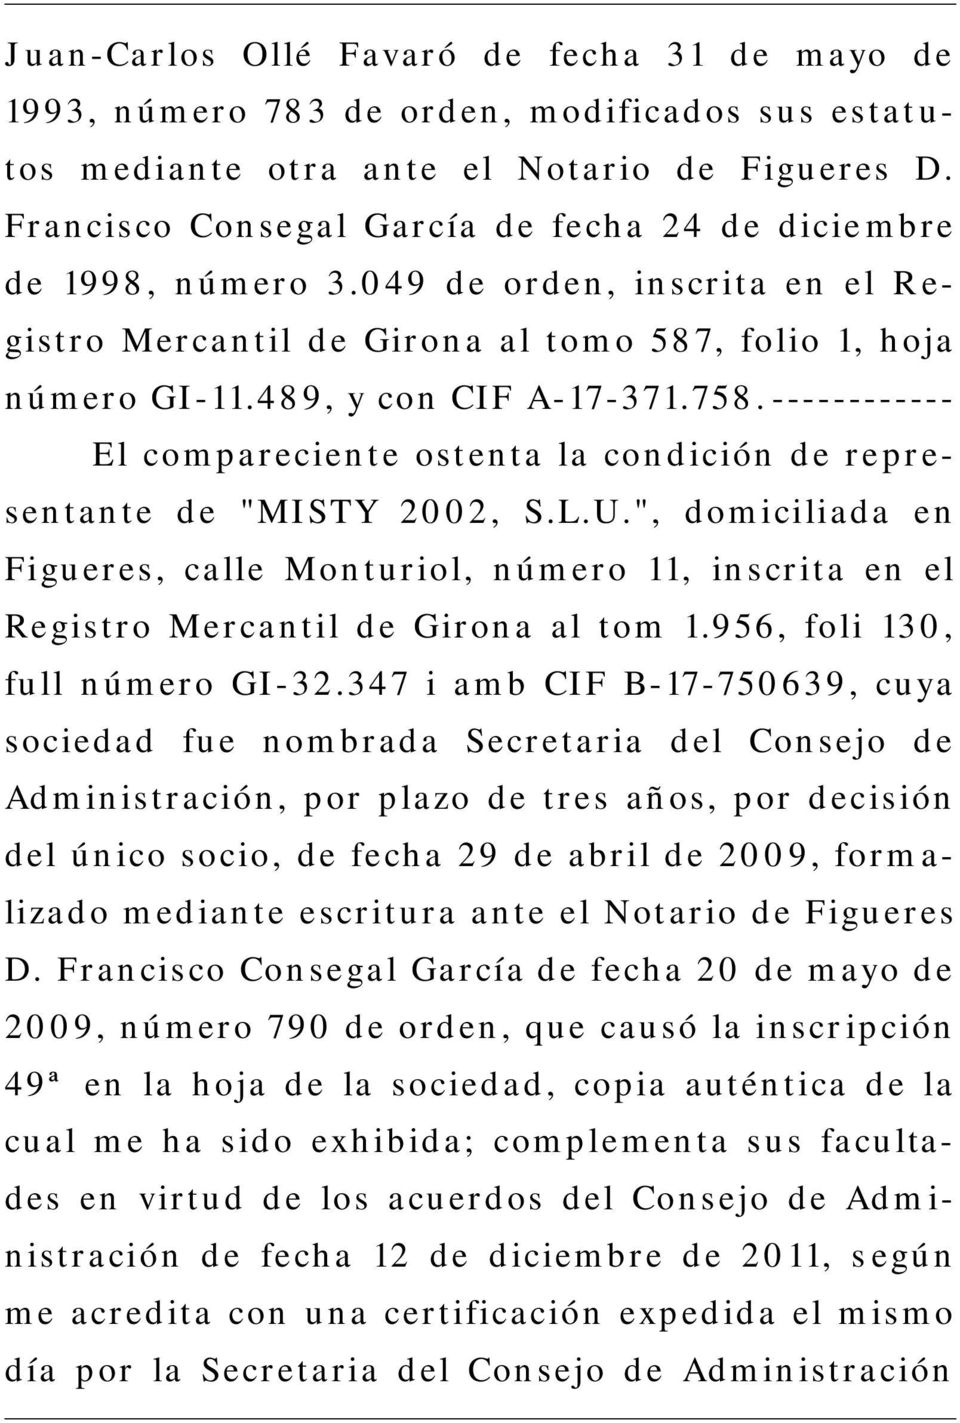 ------------ El compareciente ostenta la condición de representante de "MISTY 2002, S.L.U.", domiciliada en Figueres, calle Monturiol, número 11, inscrita en el Registro Mercantil de Girona al tom 1.